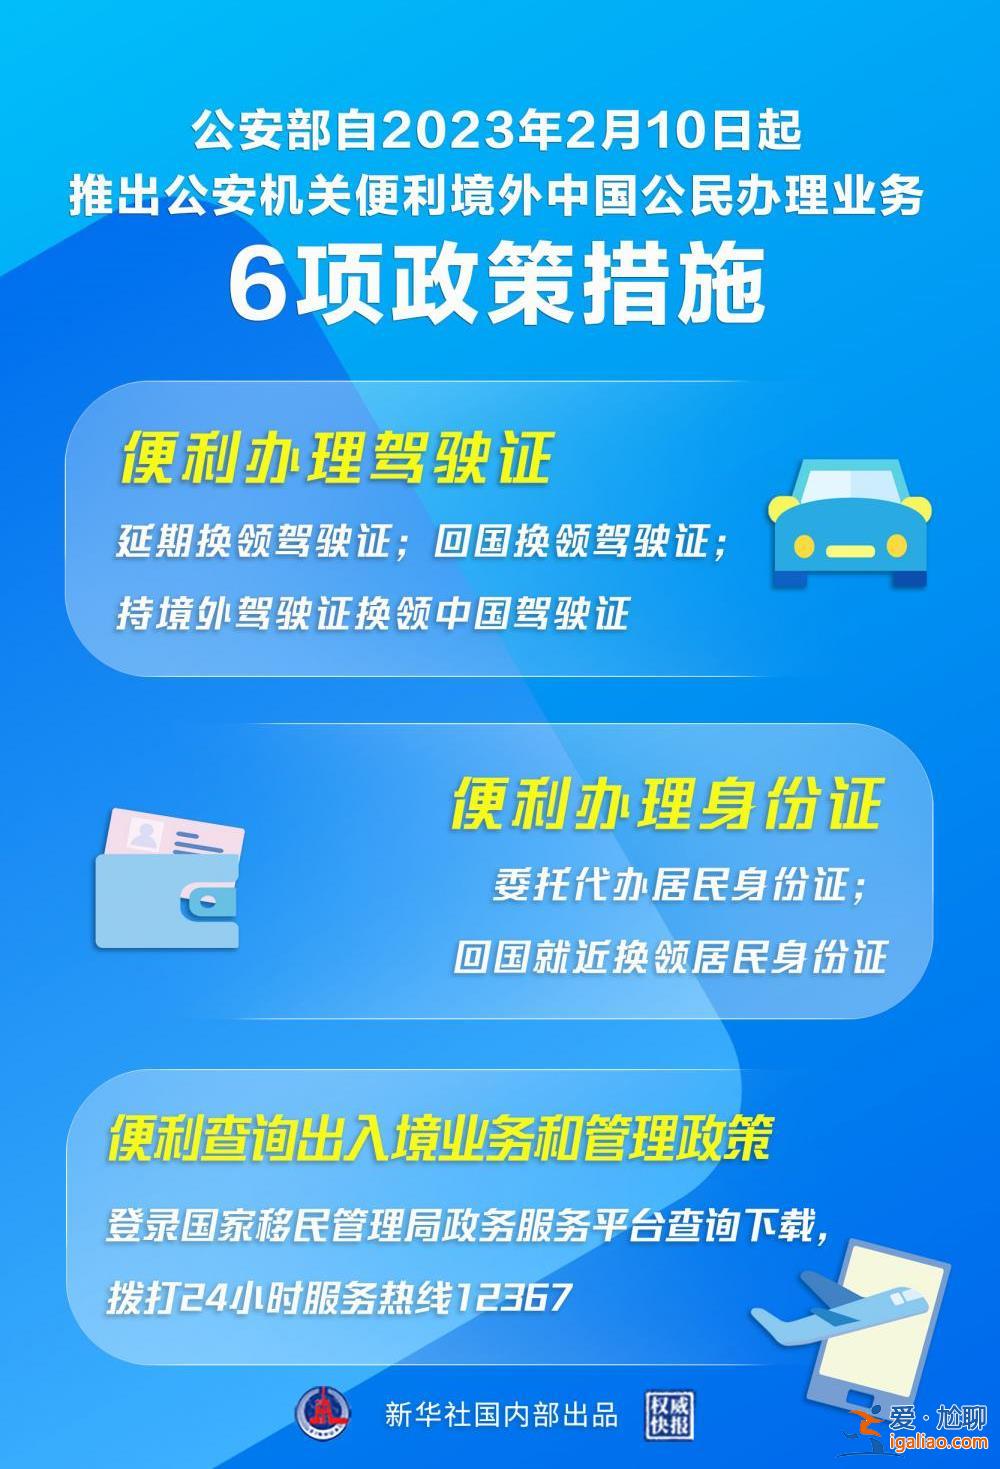 “延期办”“委托办” 公安部推出6项措施便利境外中国公民？